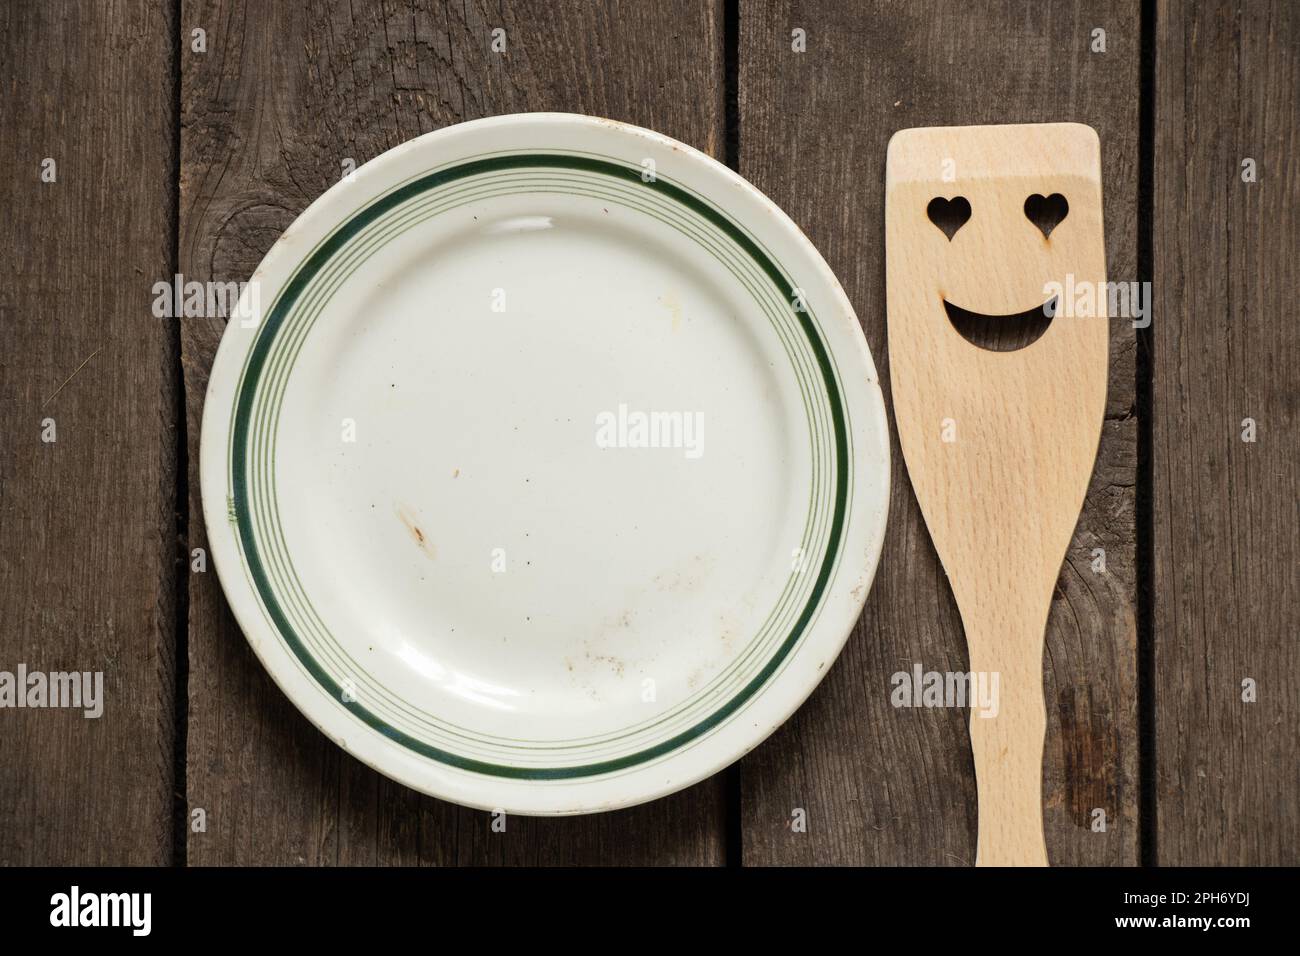 vieille vaisselle blanche en verre vide et spatule en bois avec un sourire sur une table en bois, ustensiles de cuisine Banque D'Images